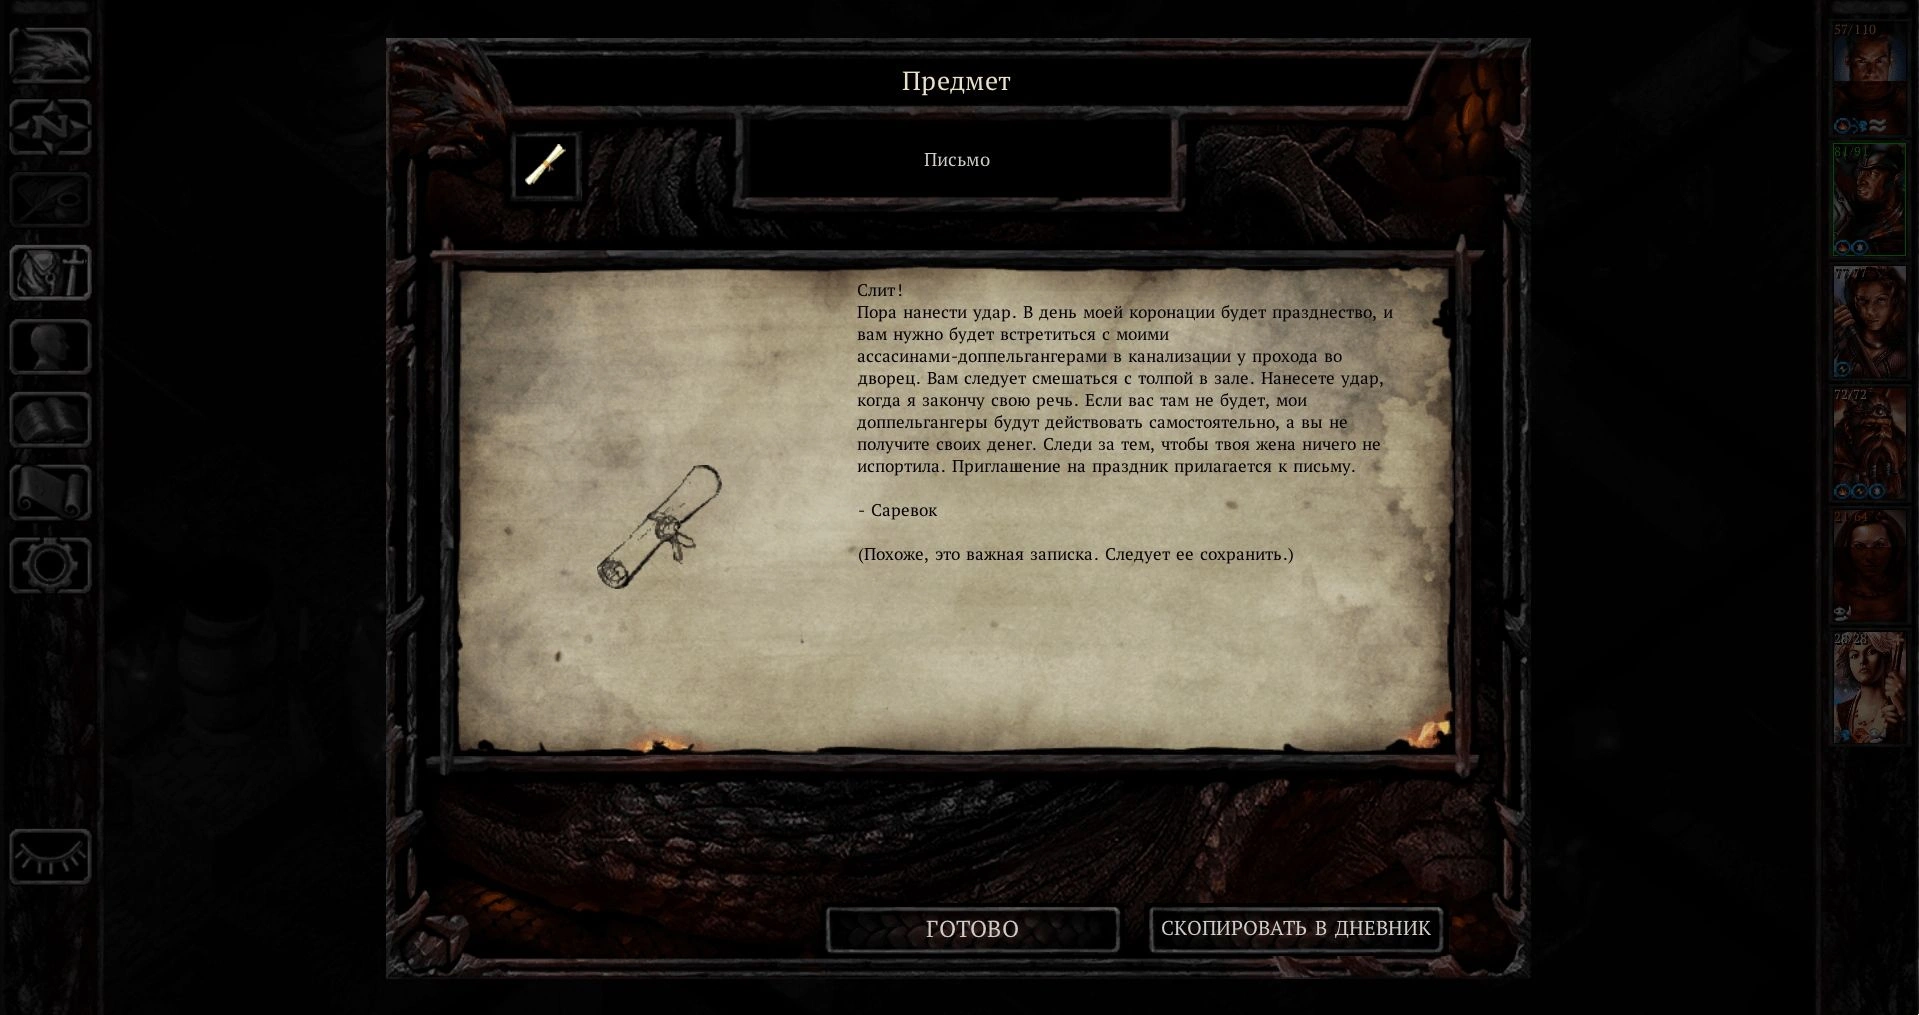 [Baldur’s Gate] На скриншоте: Саревок в подробностях излагает планы.